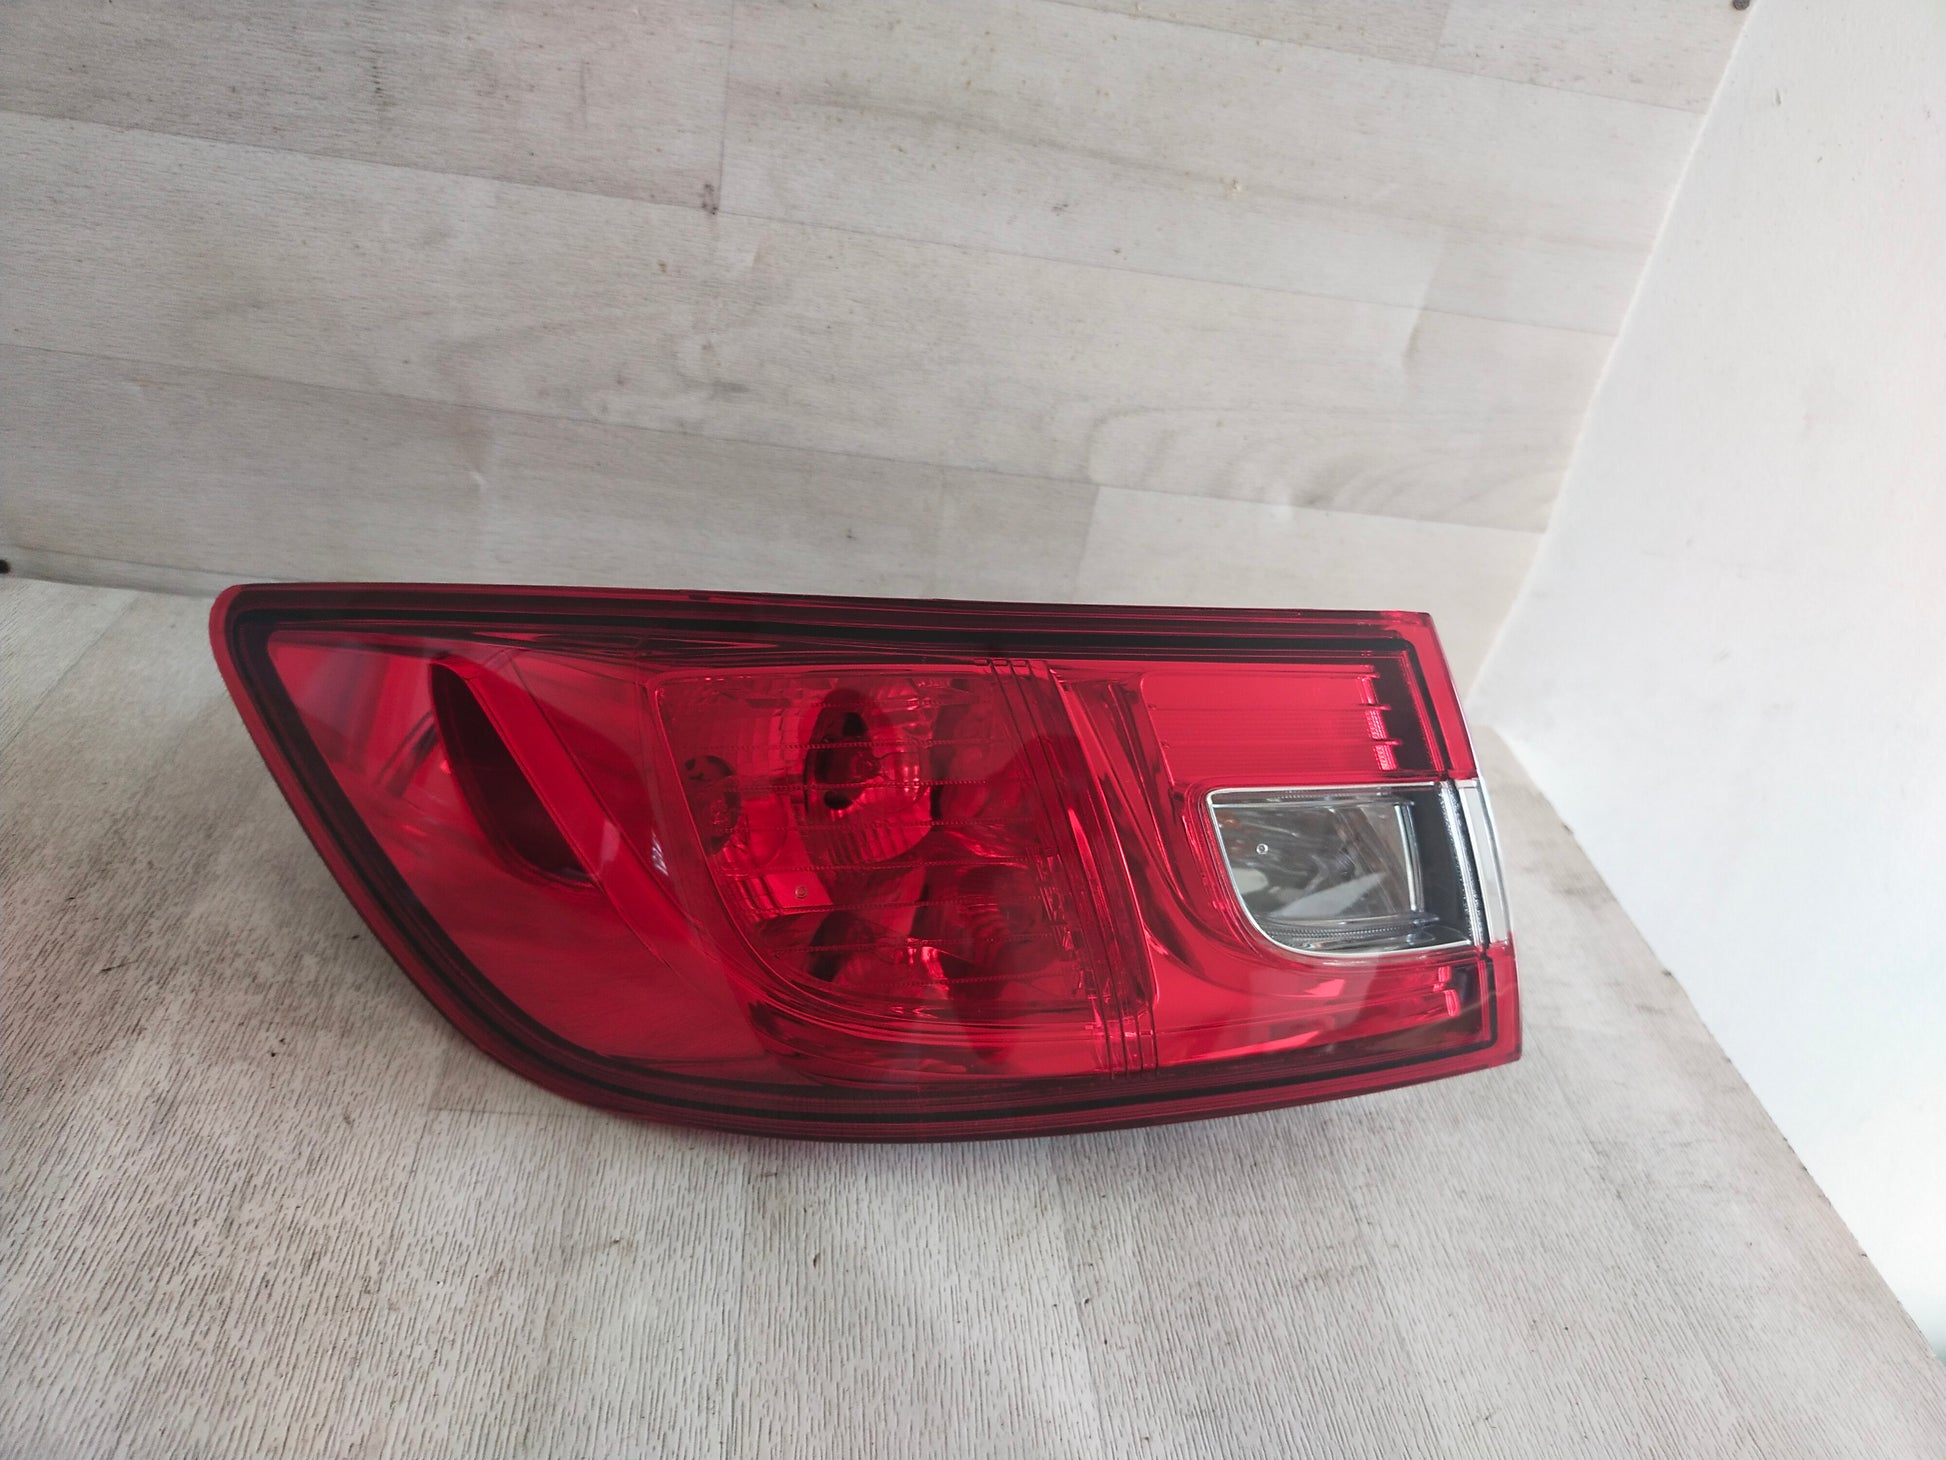 Feux Renault Clio 4 LED LTI - teinté rouge 